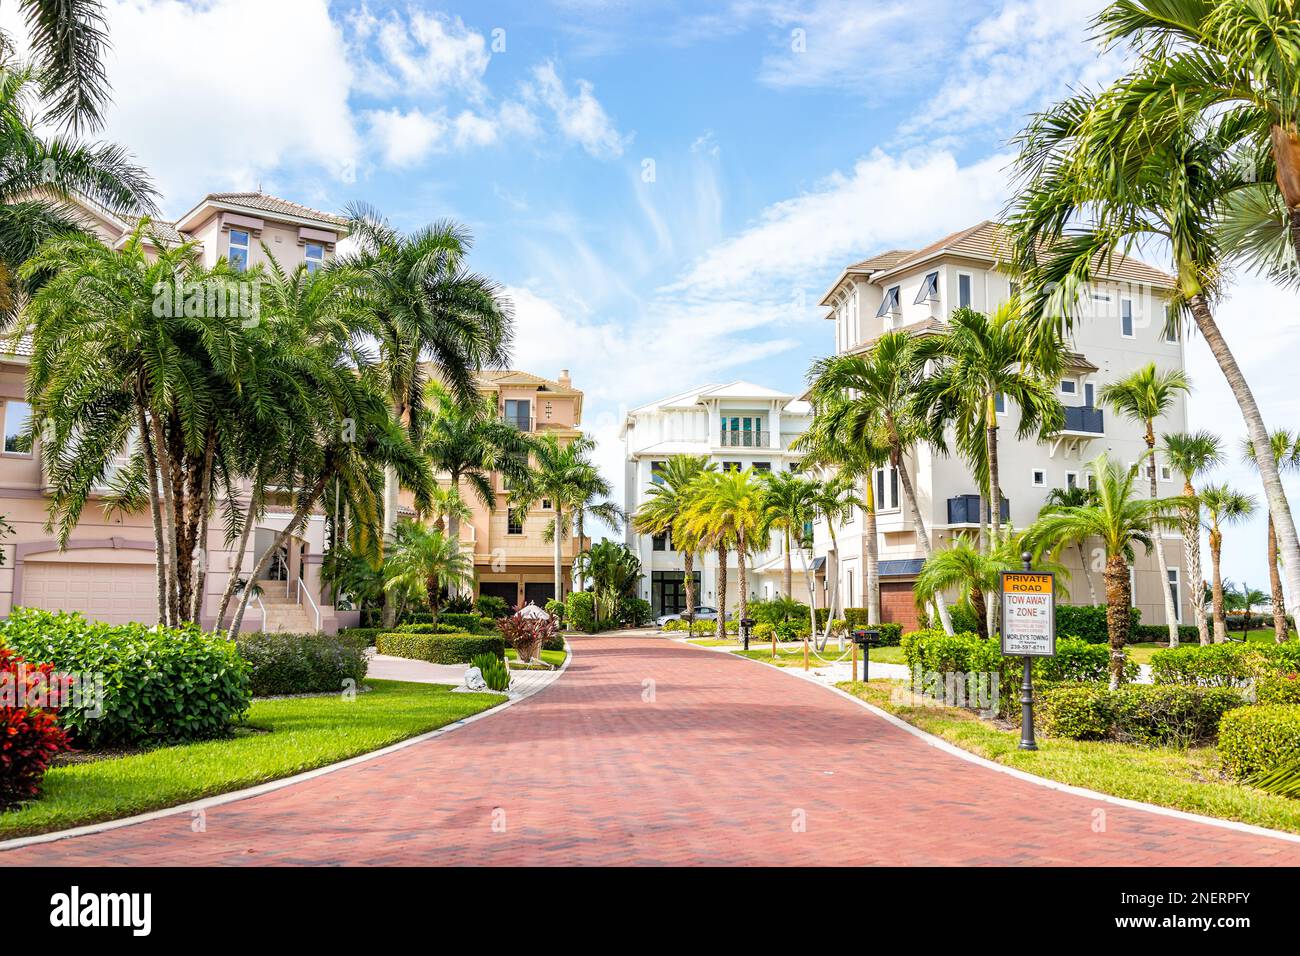 Bonita Springs, Etats-Unis - 2 novembre 2021: Pieds nus plage boulevard route quartier résidentiel en Floride avec maisons de luxe immobilier maisons i Banque D'Images